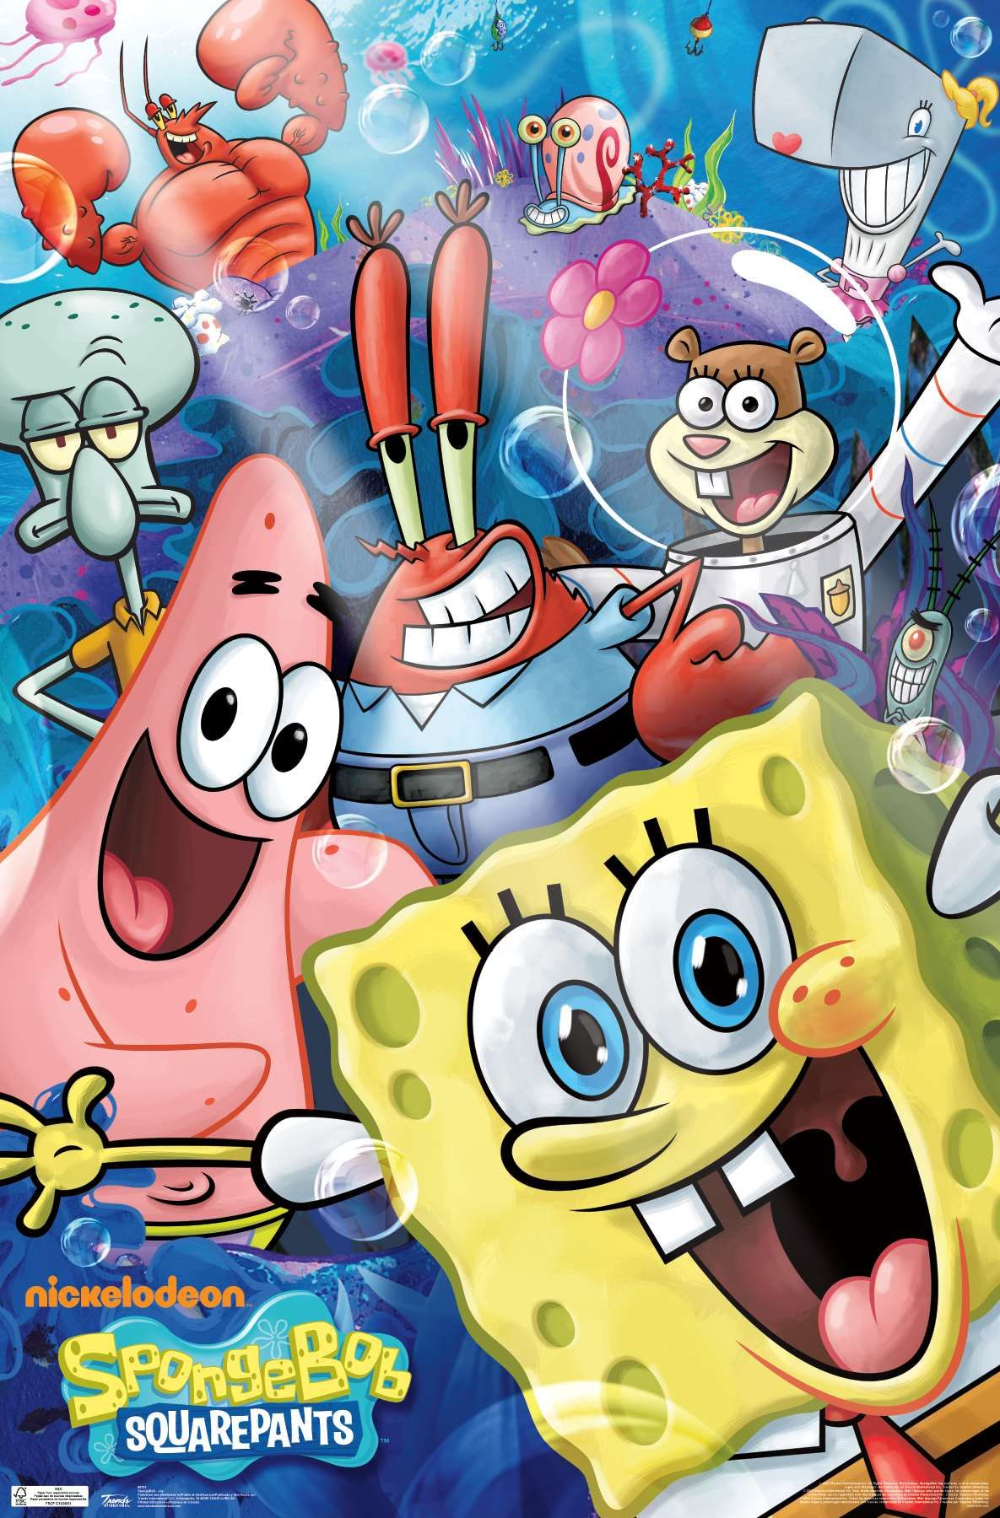 Nickelodeon Spongebob. Spongebob wallpaper, Cartoon posters, Cartoon wallpaper iphone